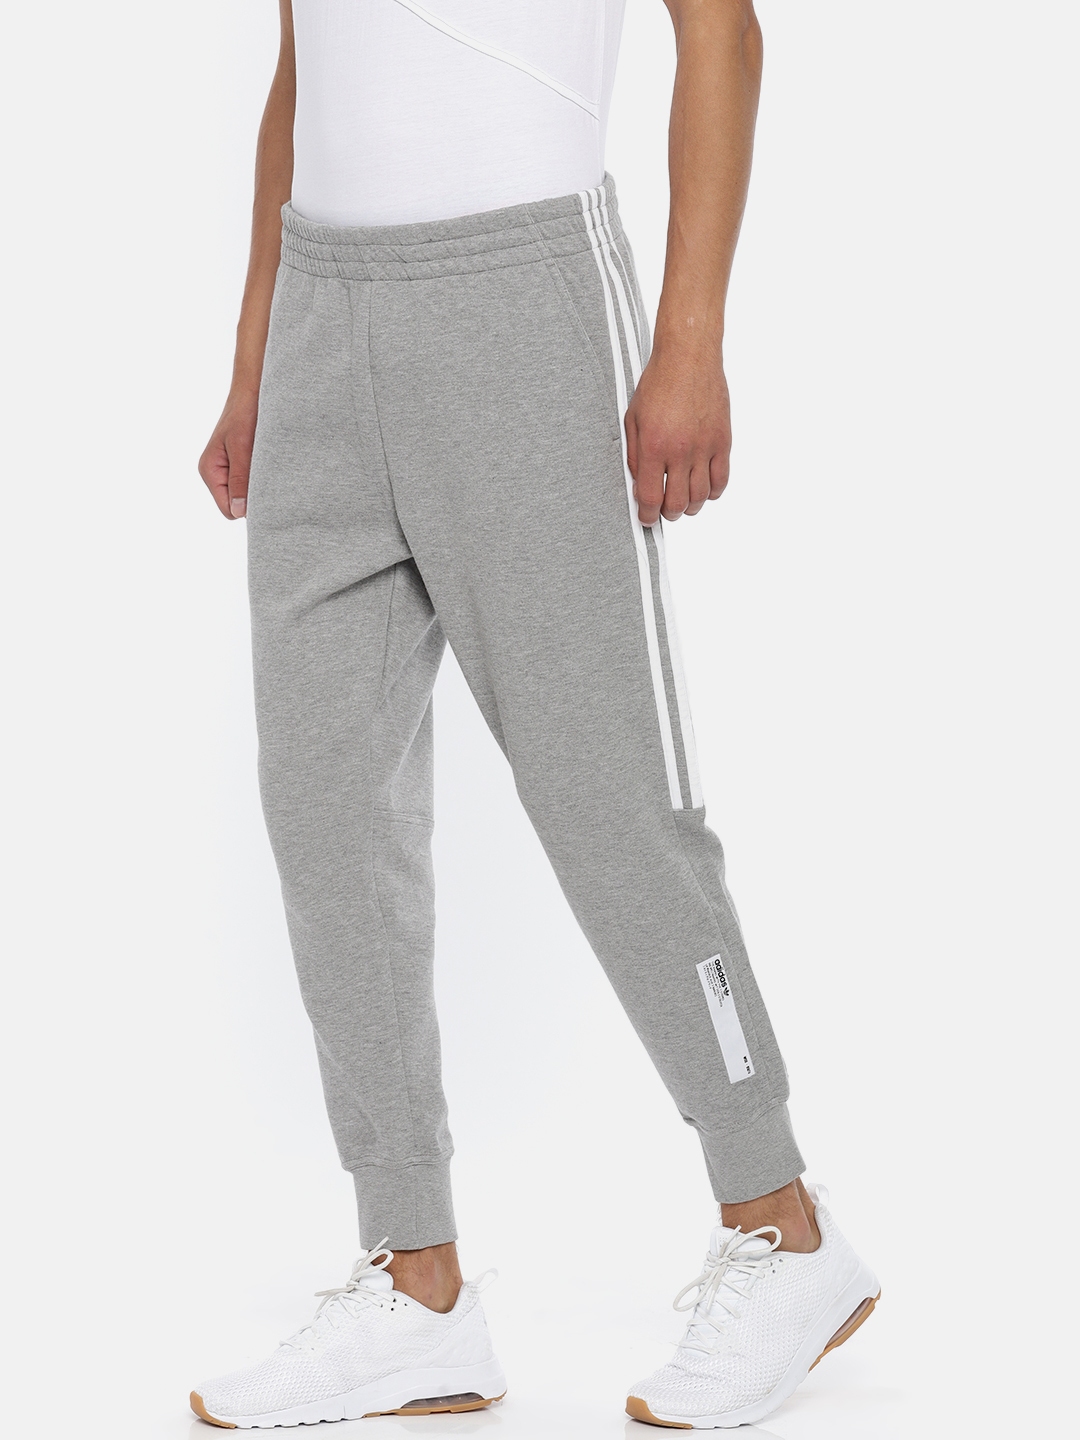 mens grey adidas track pants